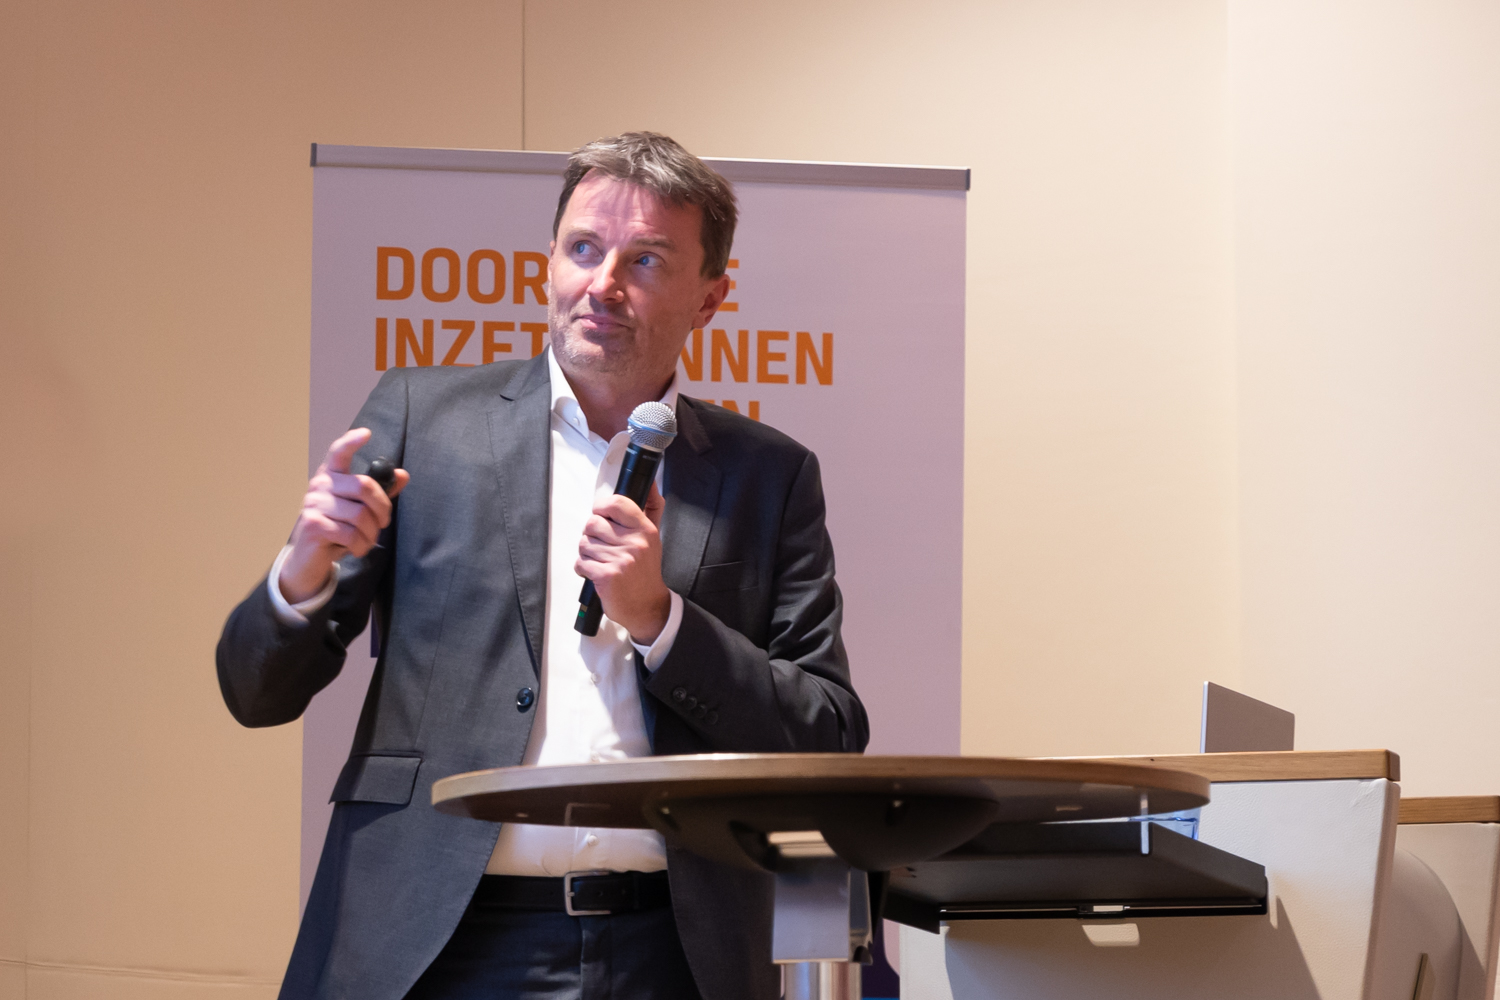 Bridging the Gap: Dutch Institutional Investors & Dutch Venture Capital